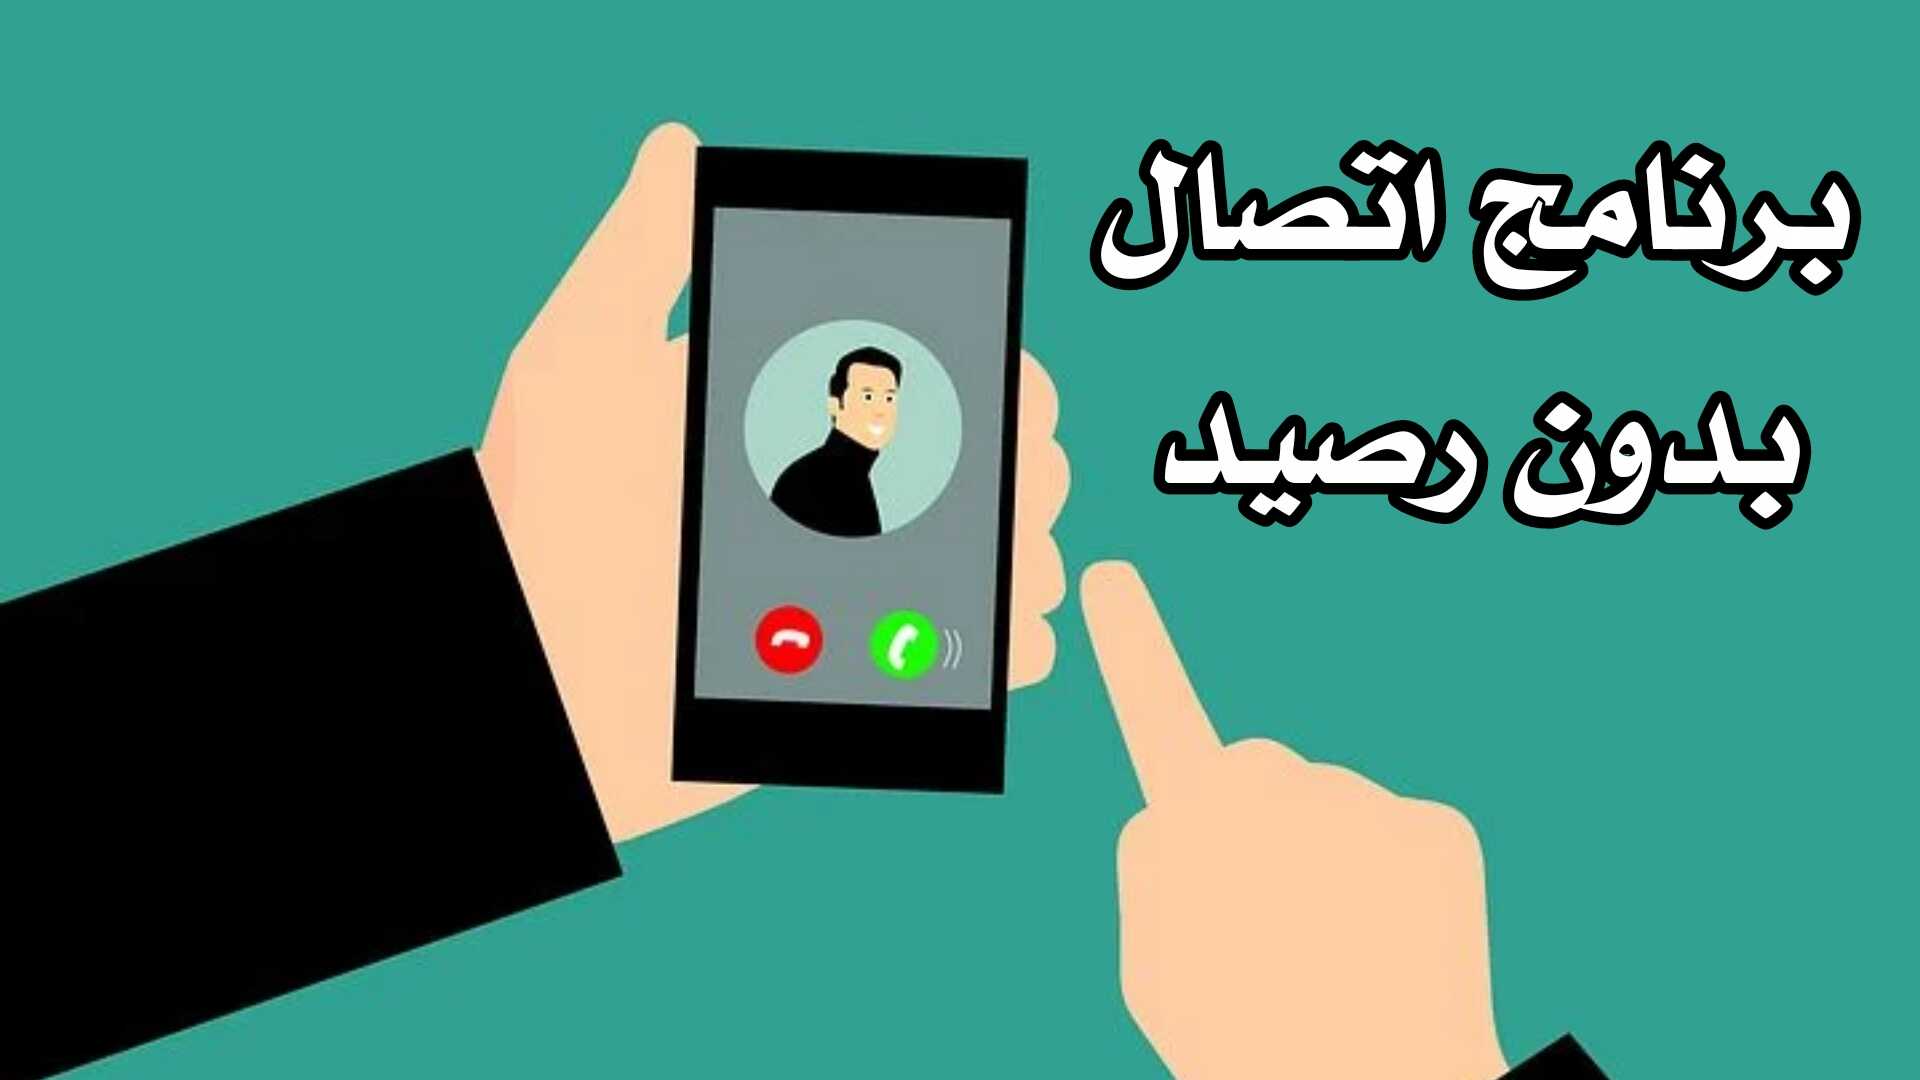 برنامج اتصال بدون رصيد مكالمات مجانية لأي رقم هاتف حول العالم